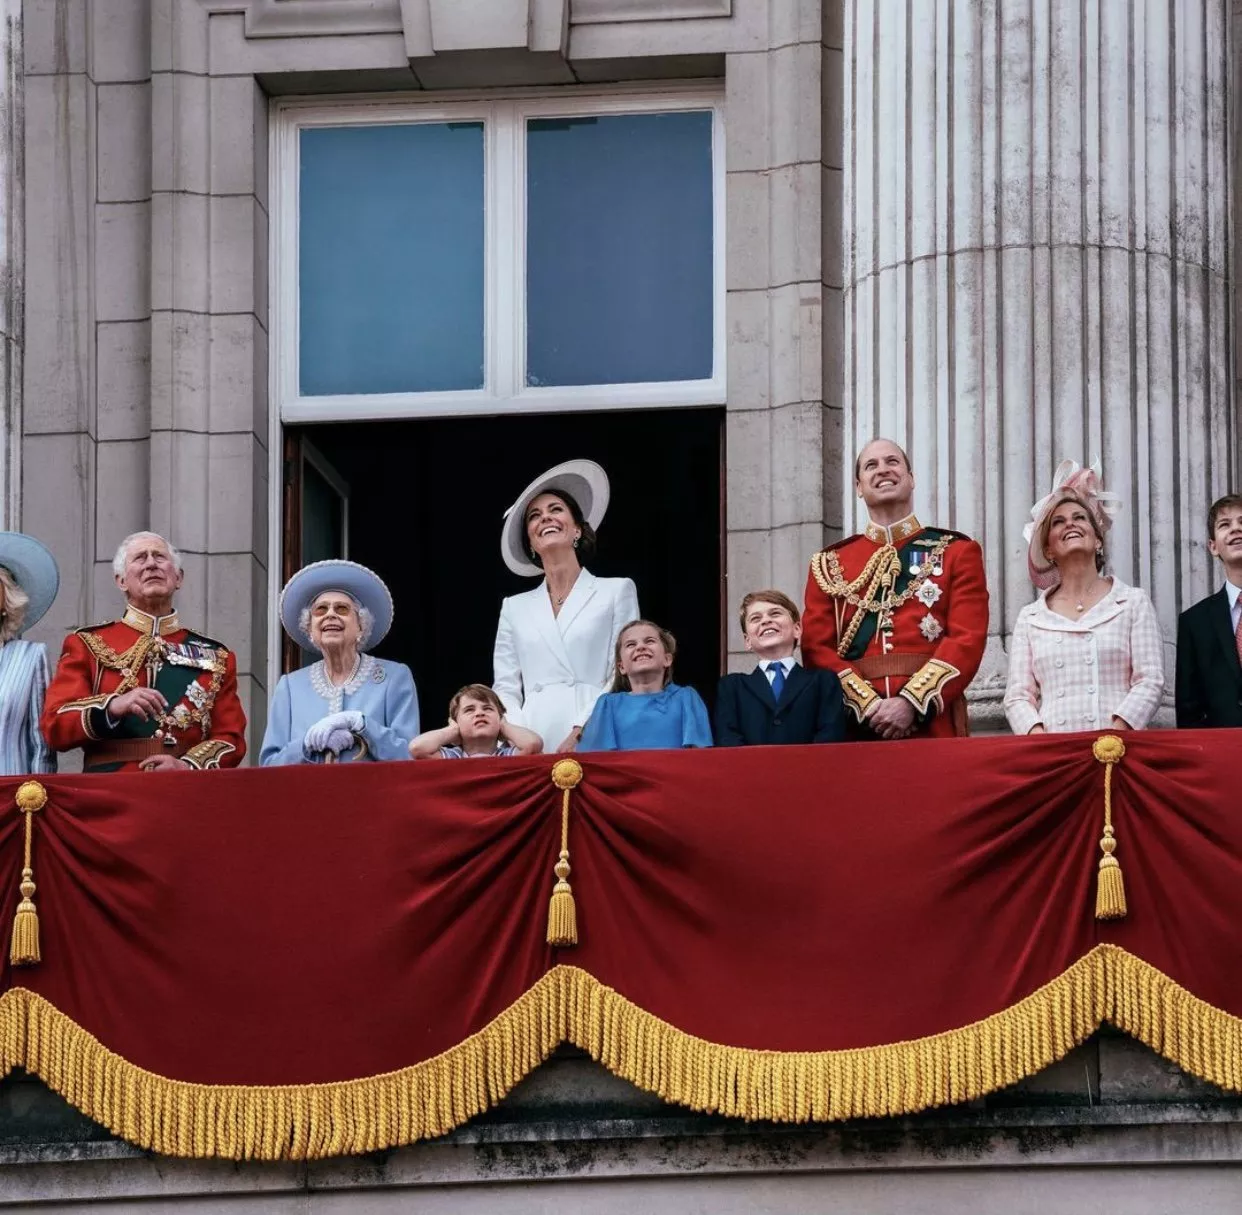 أجمل صور وفيديوهات مظاهر الإحتفال في اليوبيل البلاتيني للملكة اليزابيث